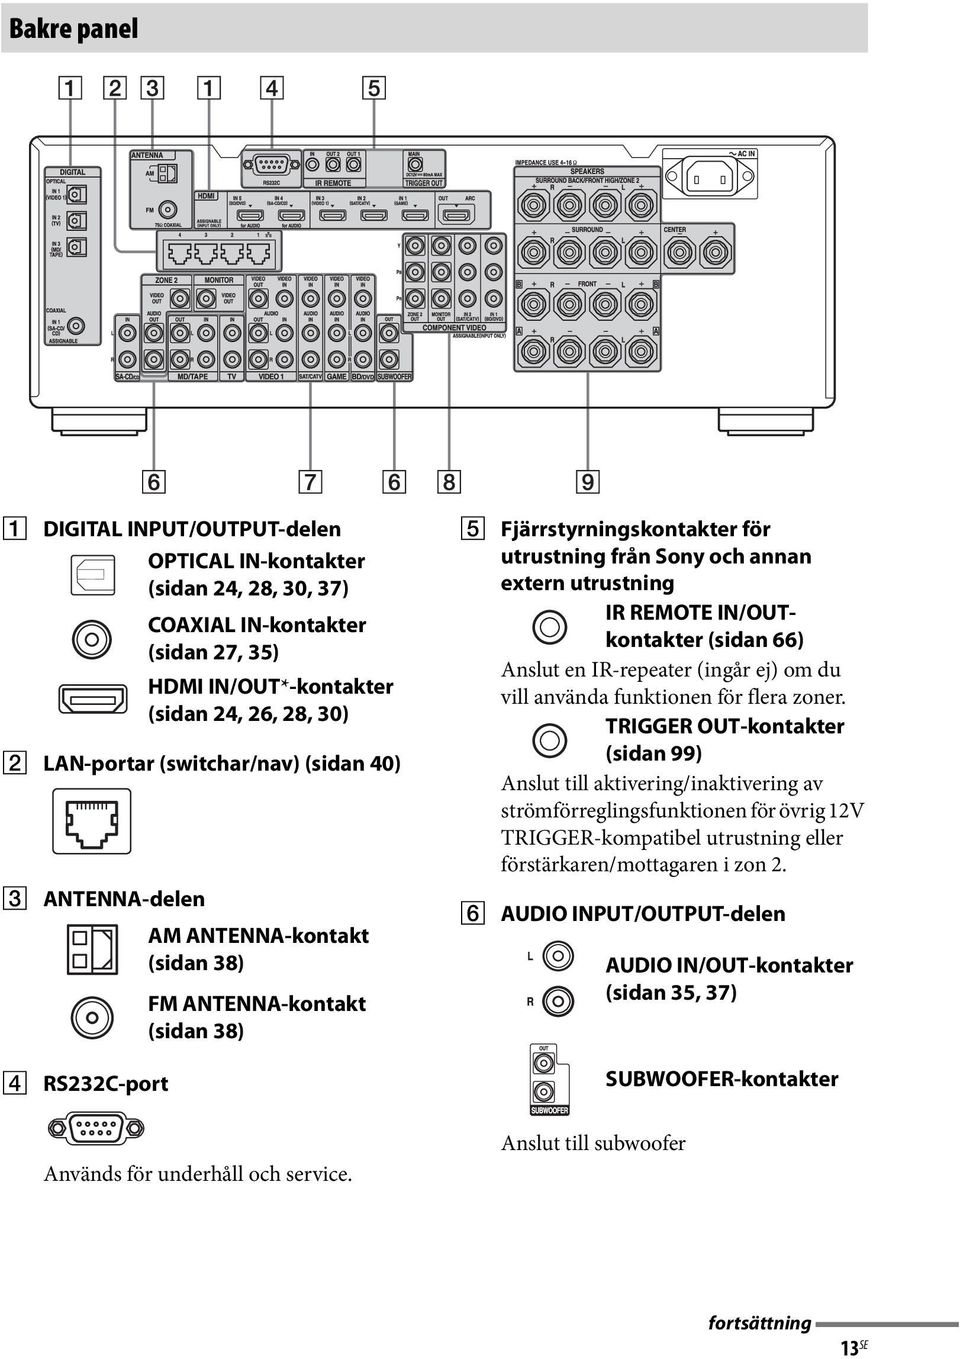 E Fjärrstyrningskontakter för utrustning från Sony och annan extern utrustning IR REMOTE IN/OUTkontakter (sidan 66) Anslut en IR-repeater (ingår ej) om du vill använda funktionen för flera zoner.